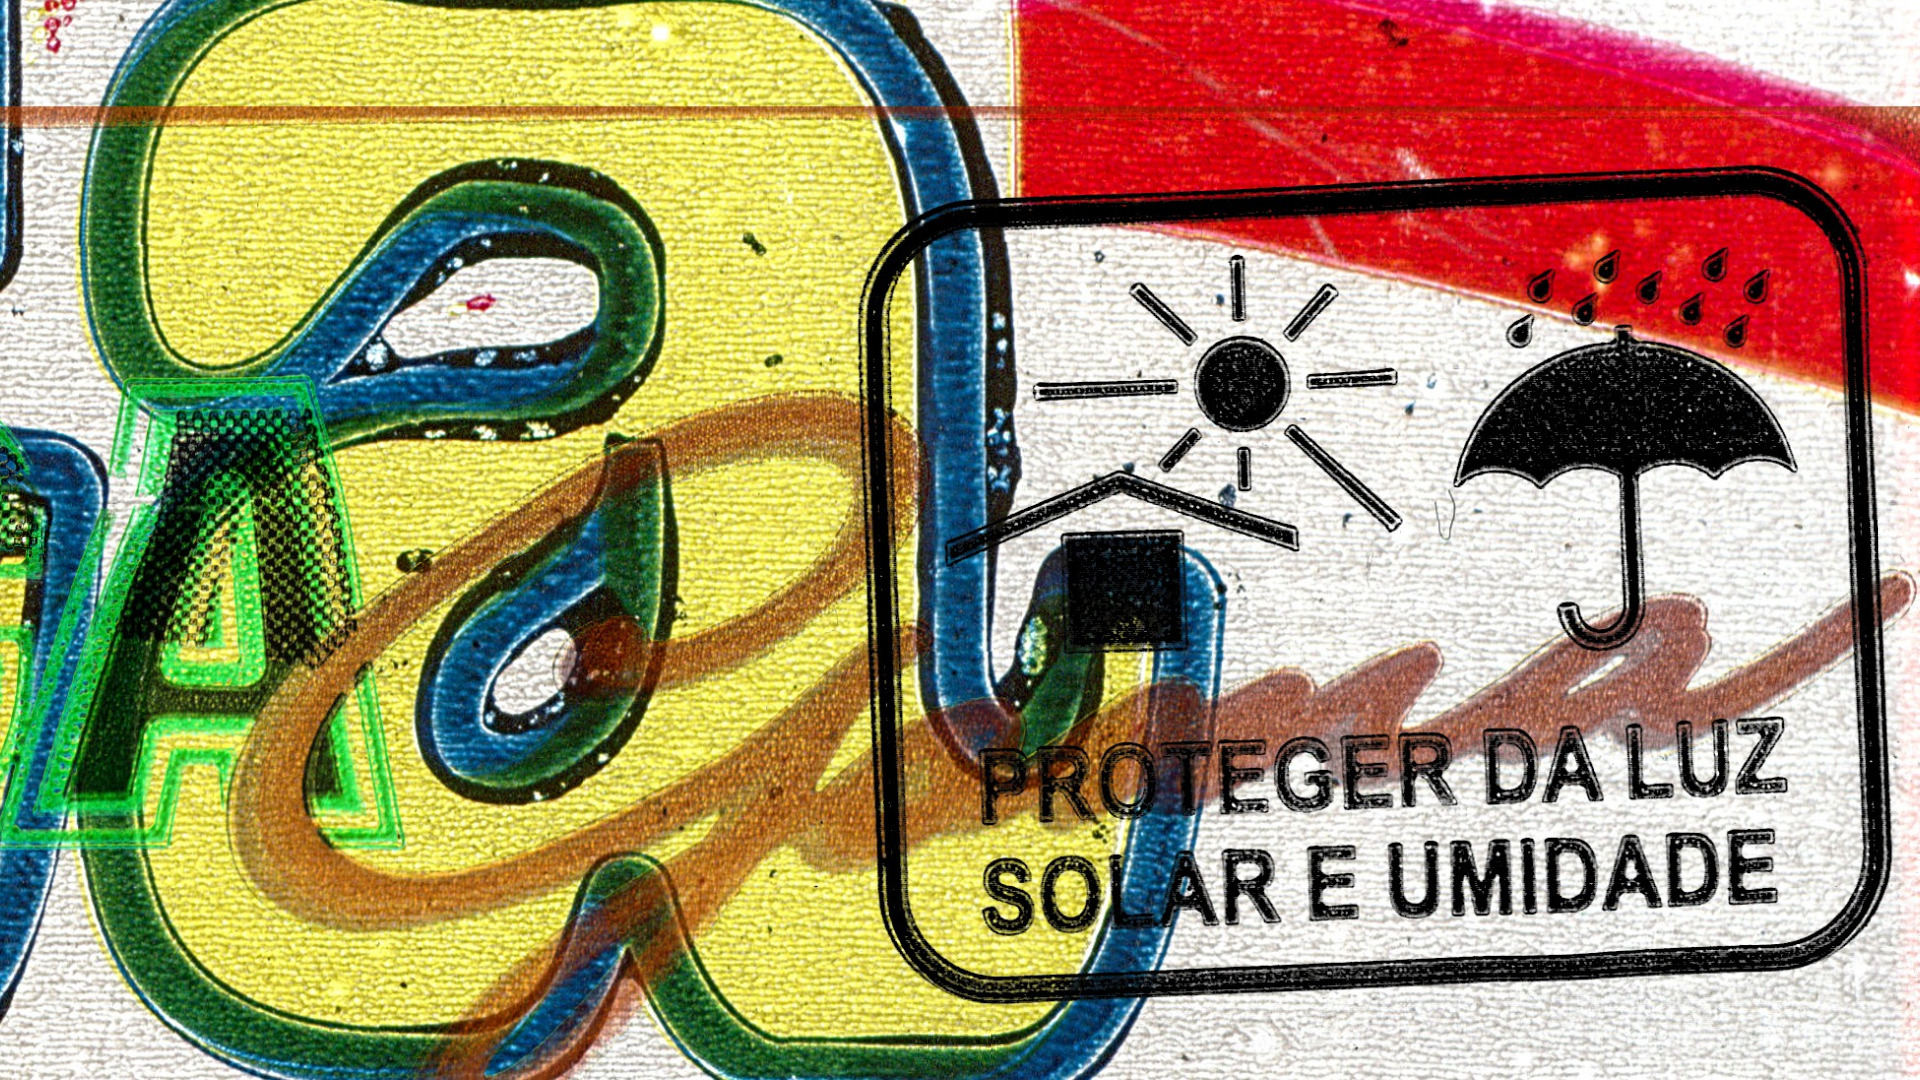 Detalhe da arte principal com destaque para o texto "Proteger da luz solar e umidade".